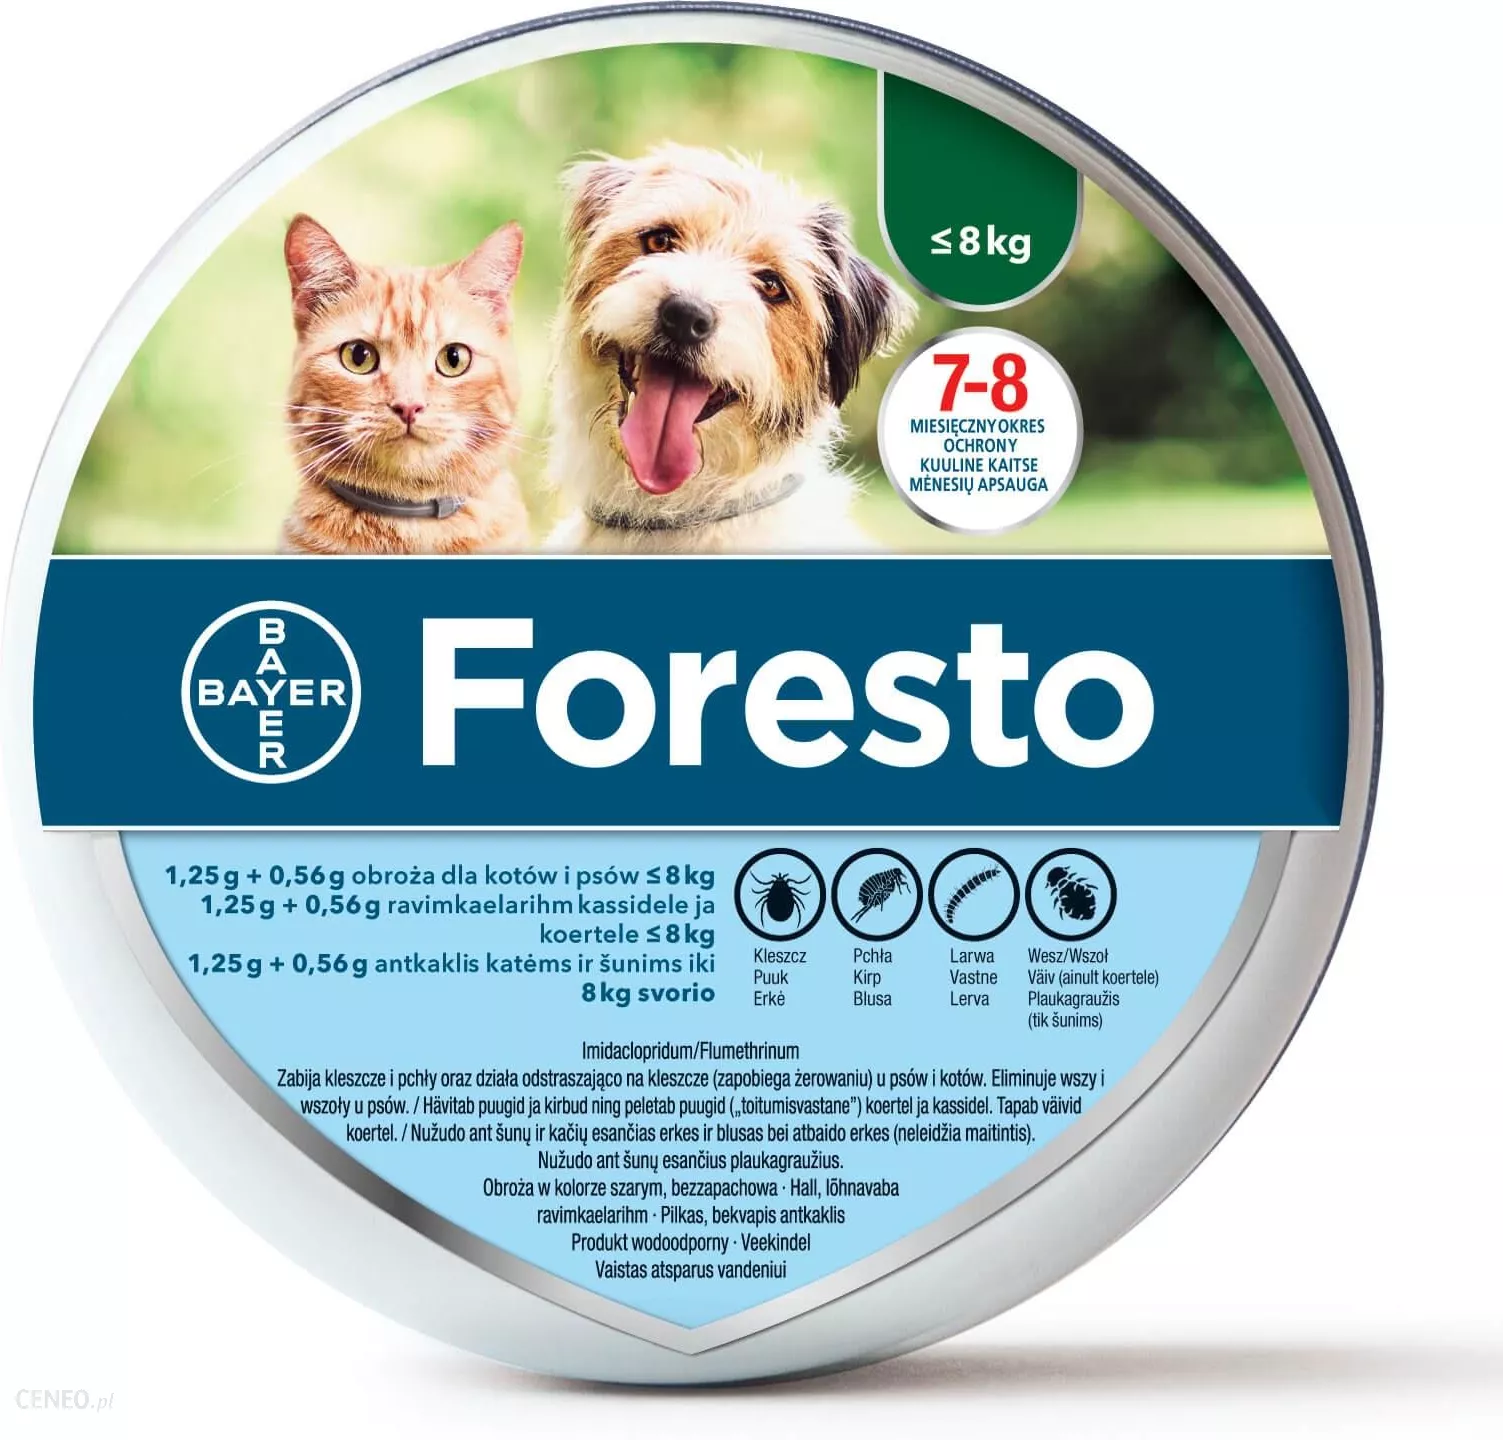 Foresto obroża dla kotów i psów <8kg przeciw kleszczom i pchłom